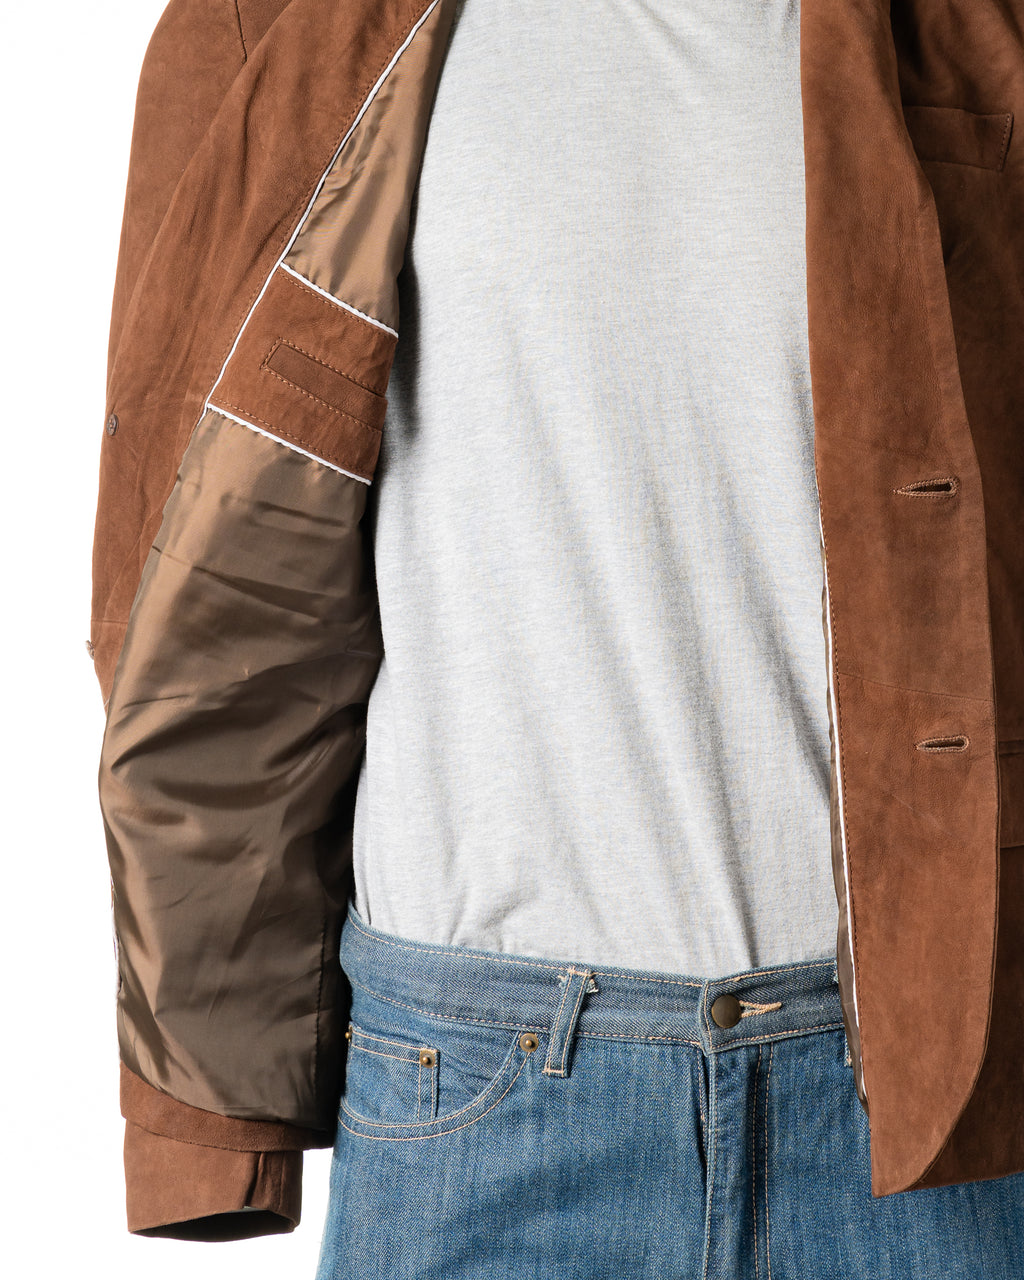 Men's Brown Fitted Tailored Suede Blazer: Federigo